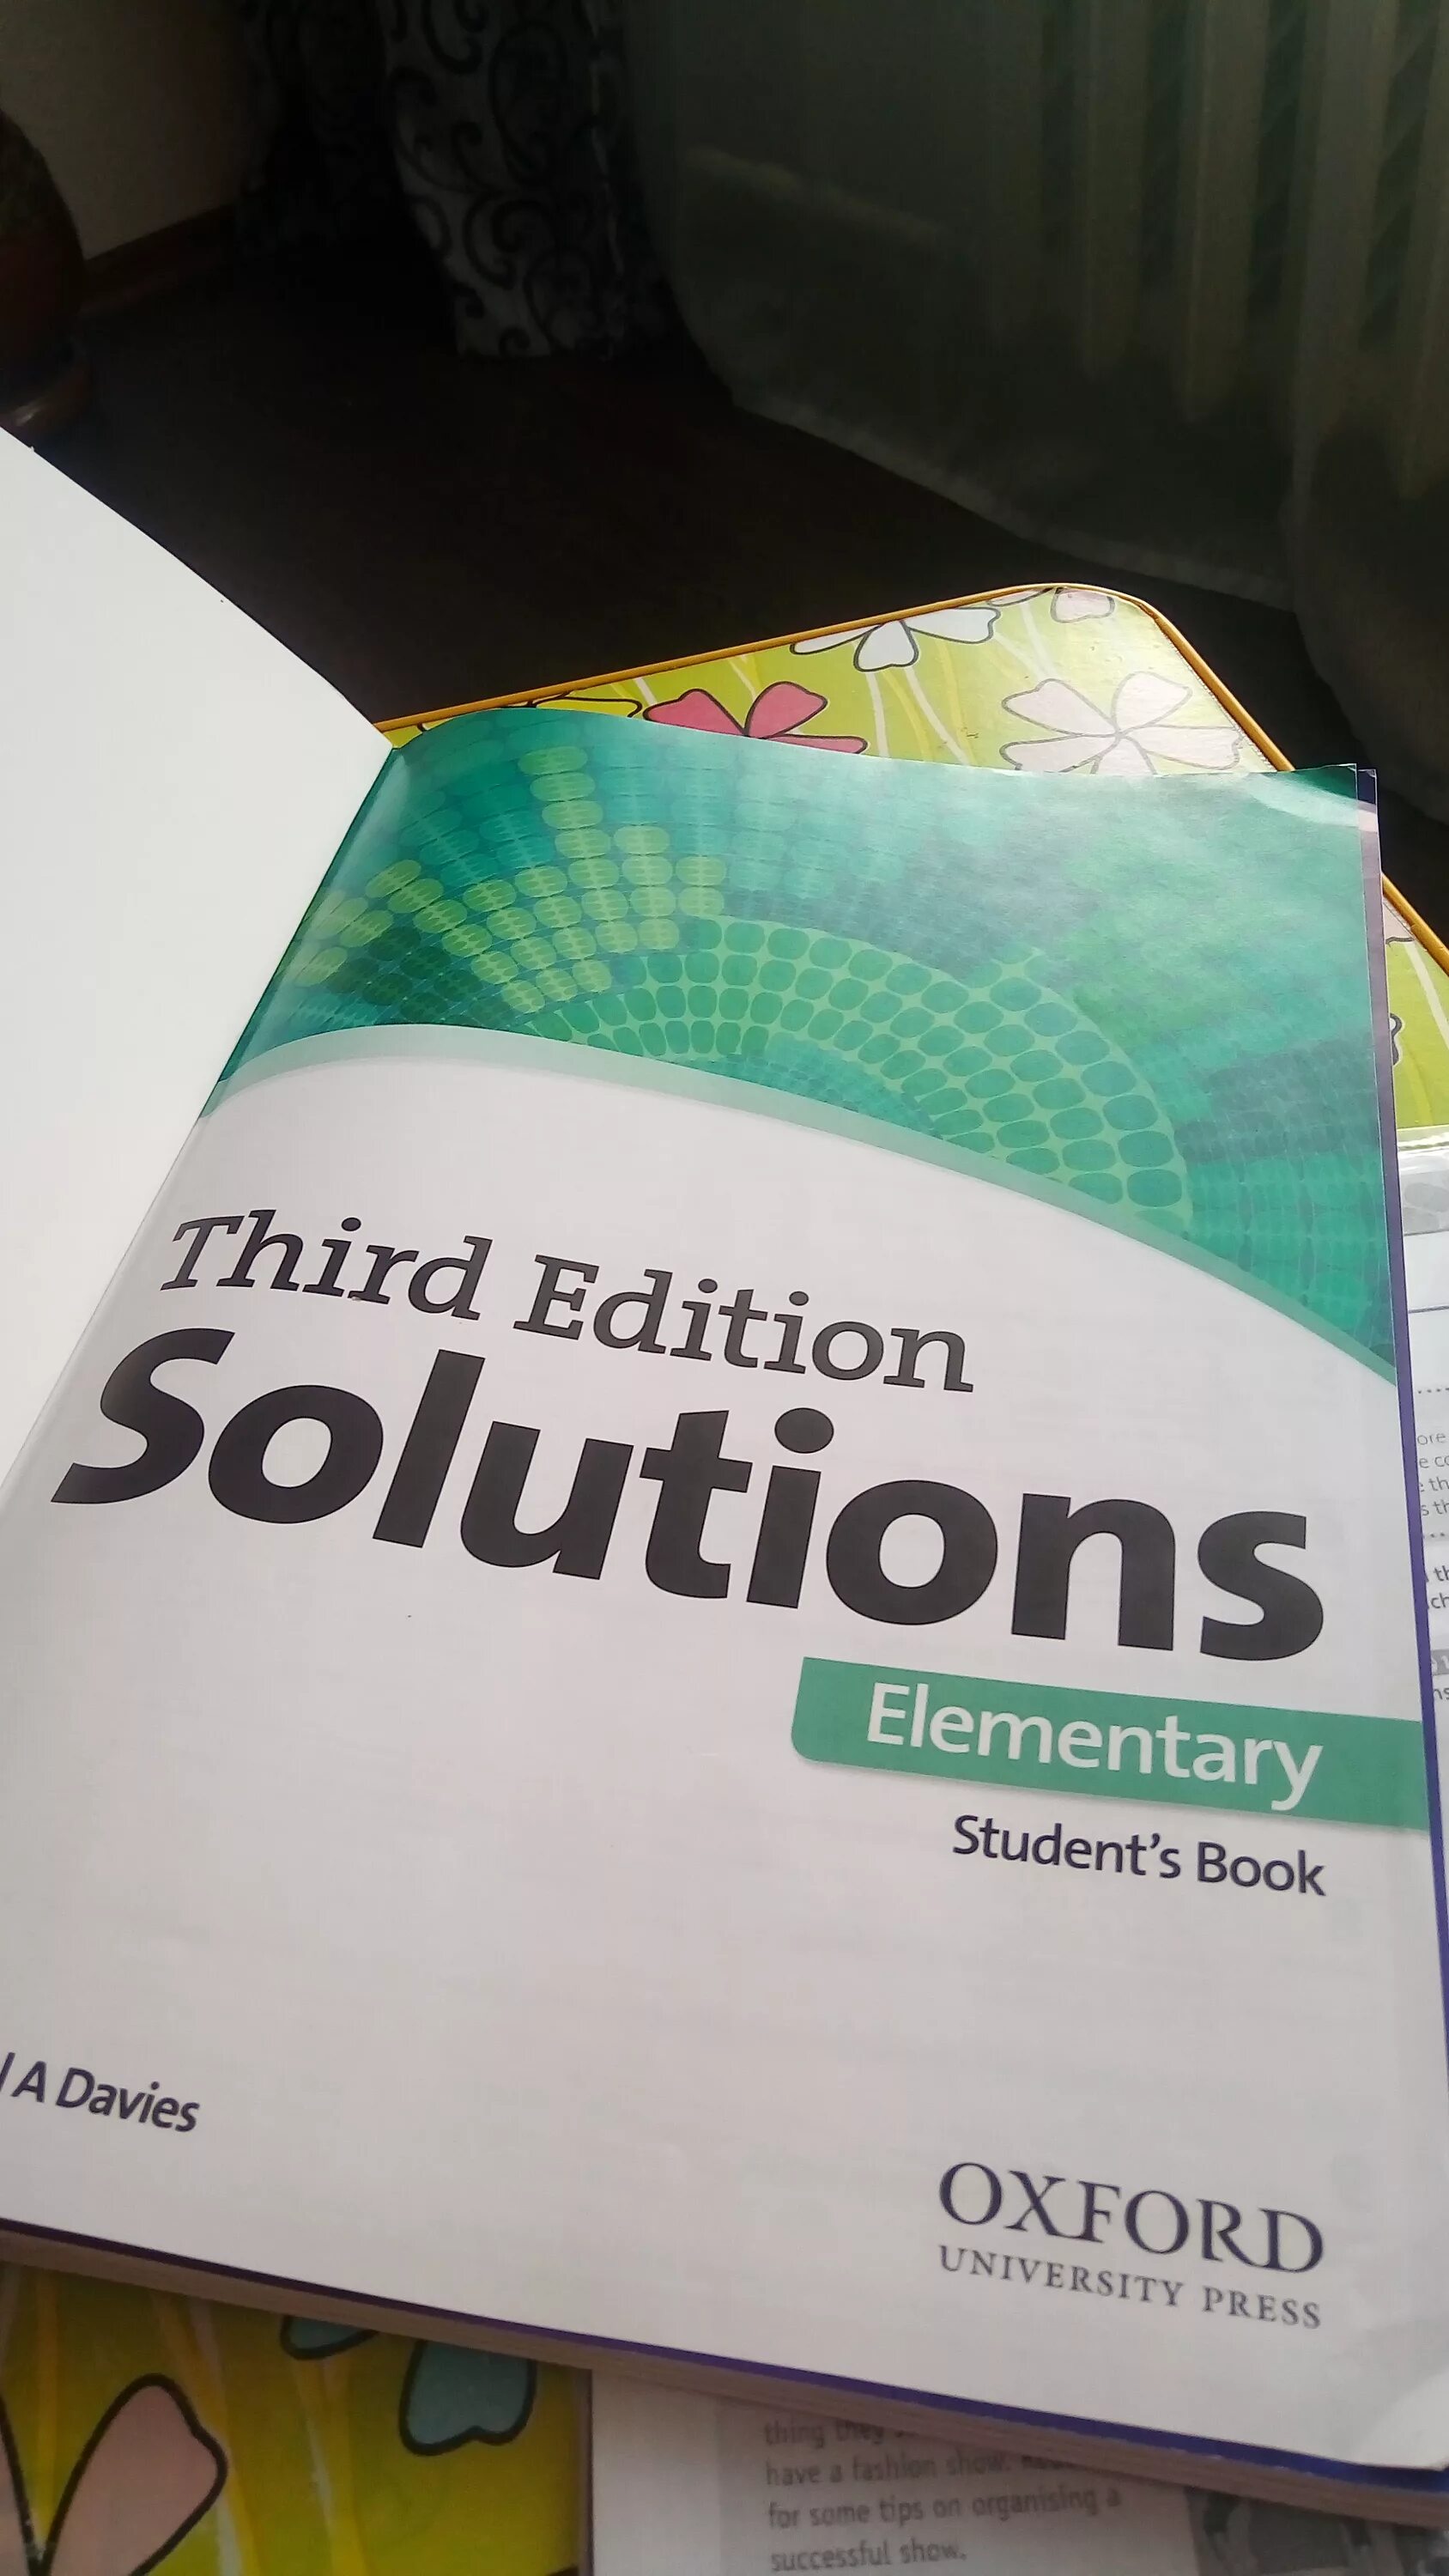 Solution elementary teachers book. Solutions учебник. Учебник solutions Elementary. Учебник Солюшенс по английскому. Солюшнс элементари 3 издание.